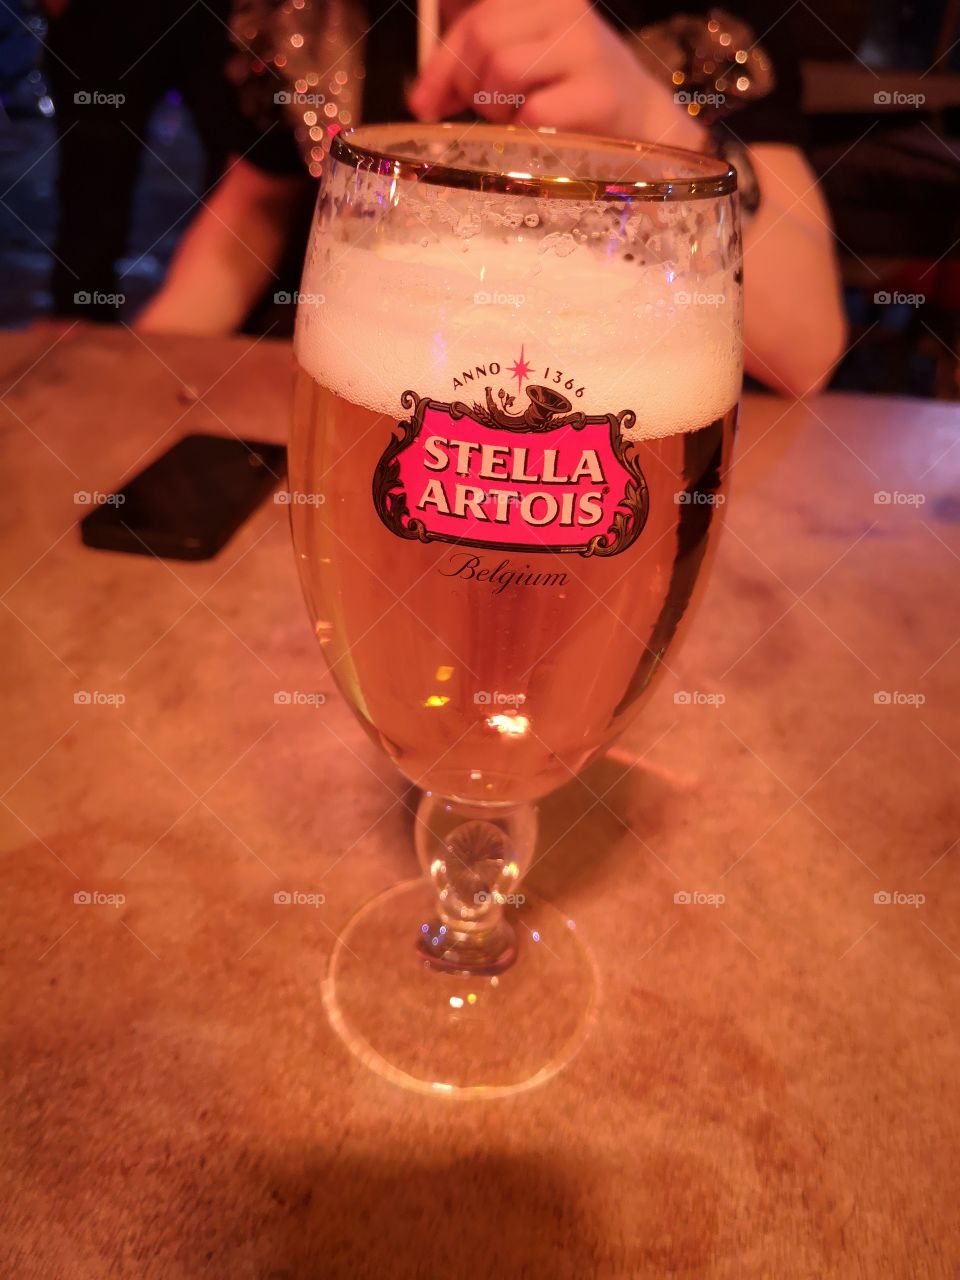 Belgium beer 👌👌